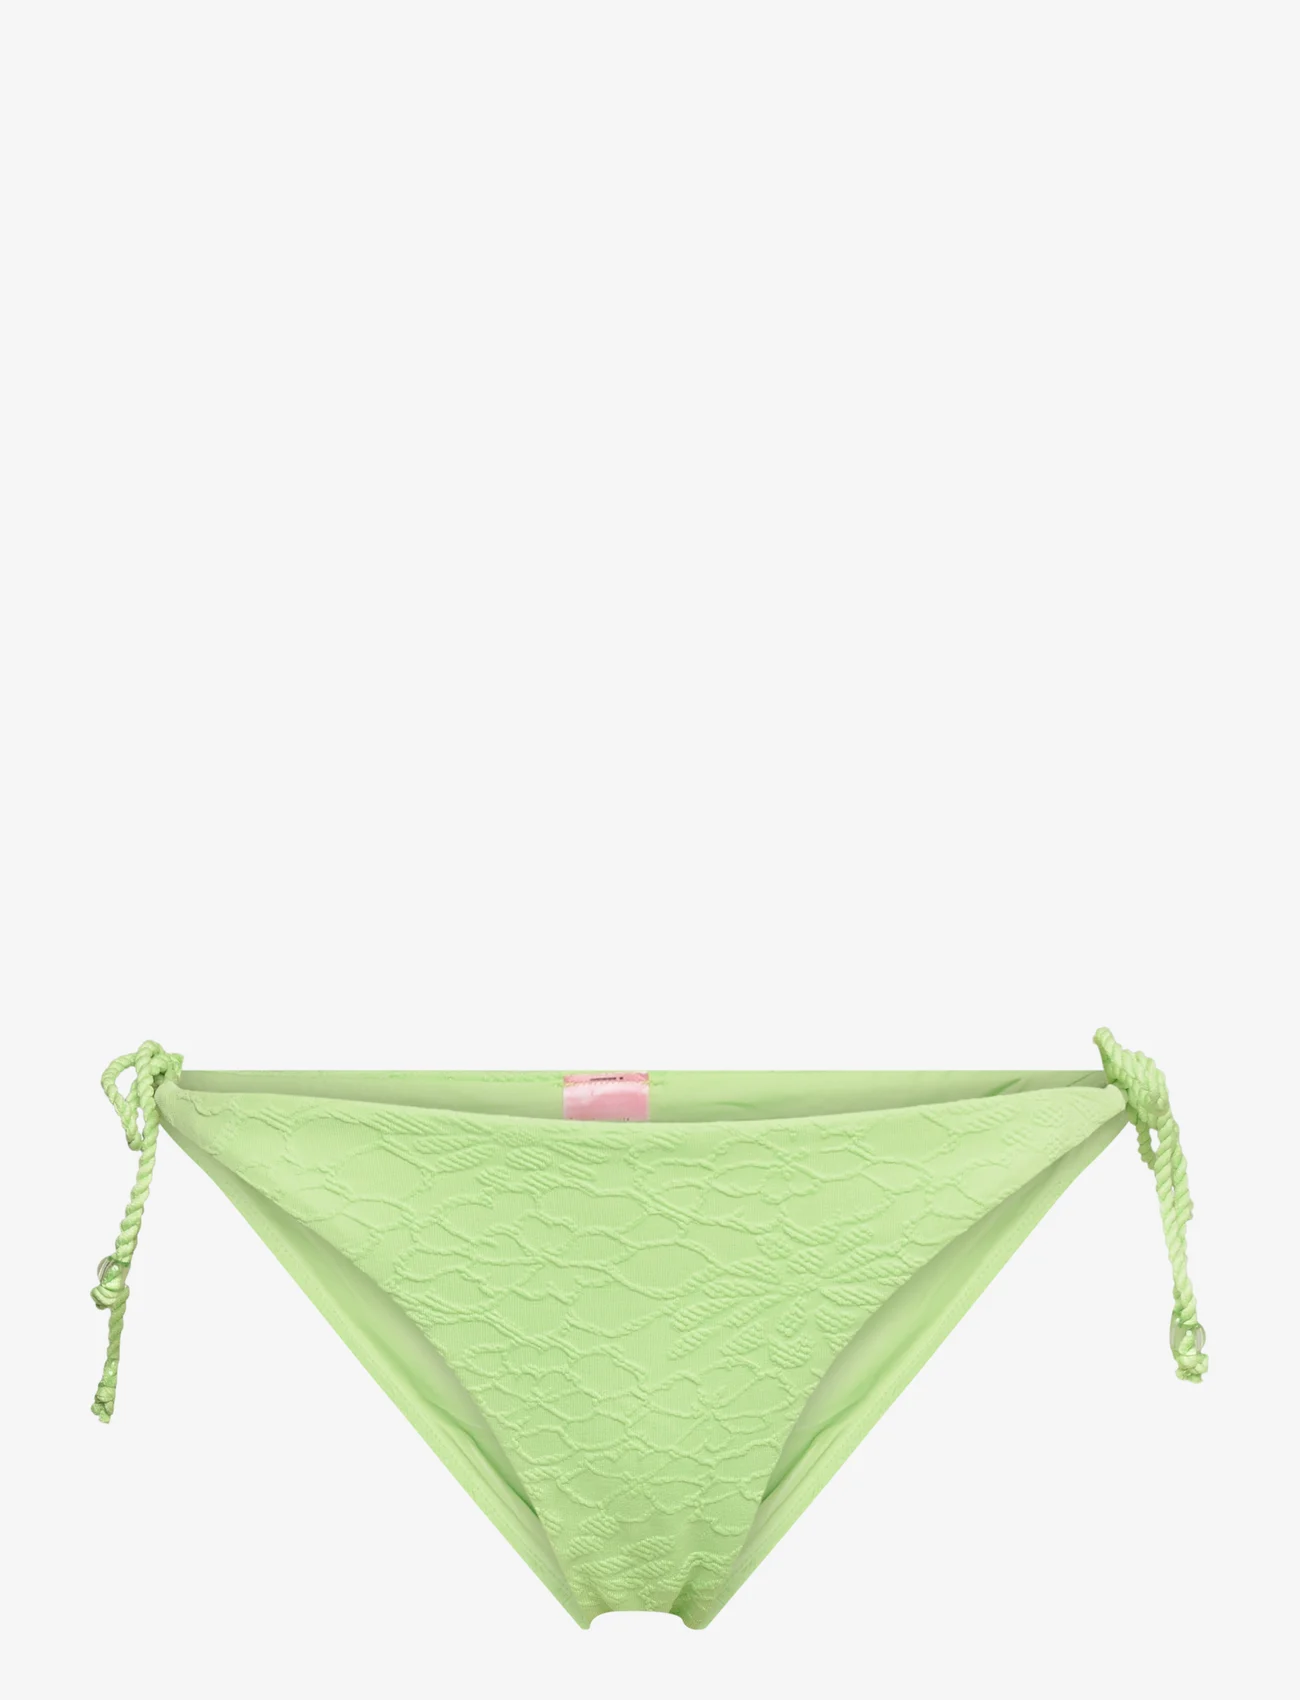 Hunkemöller - Bondi cheeky t - bikinis mit seitenbändern - paradise green - 0